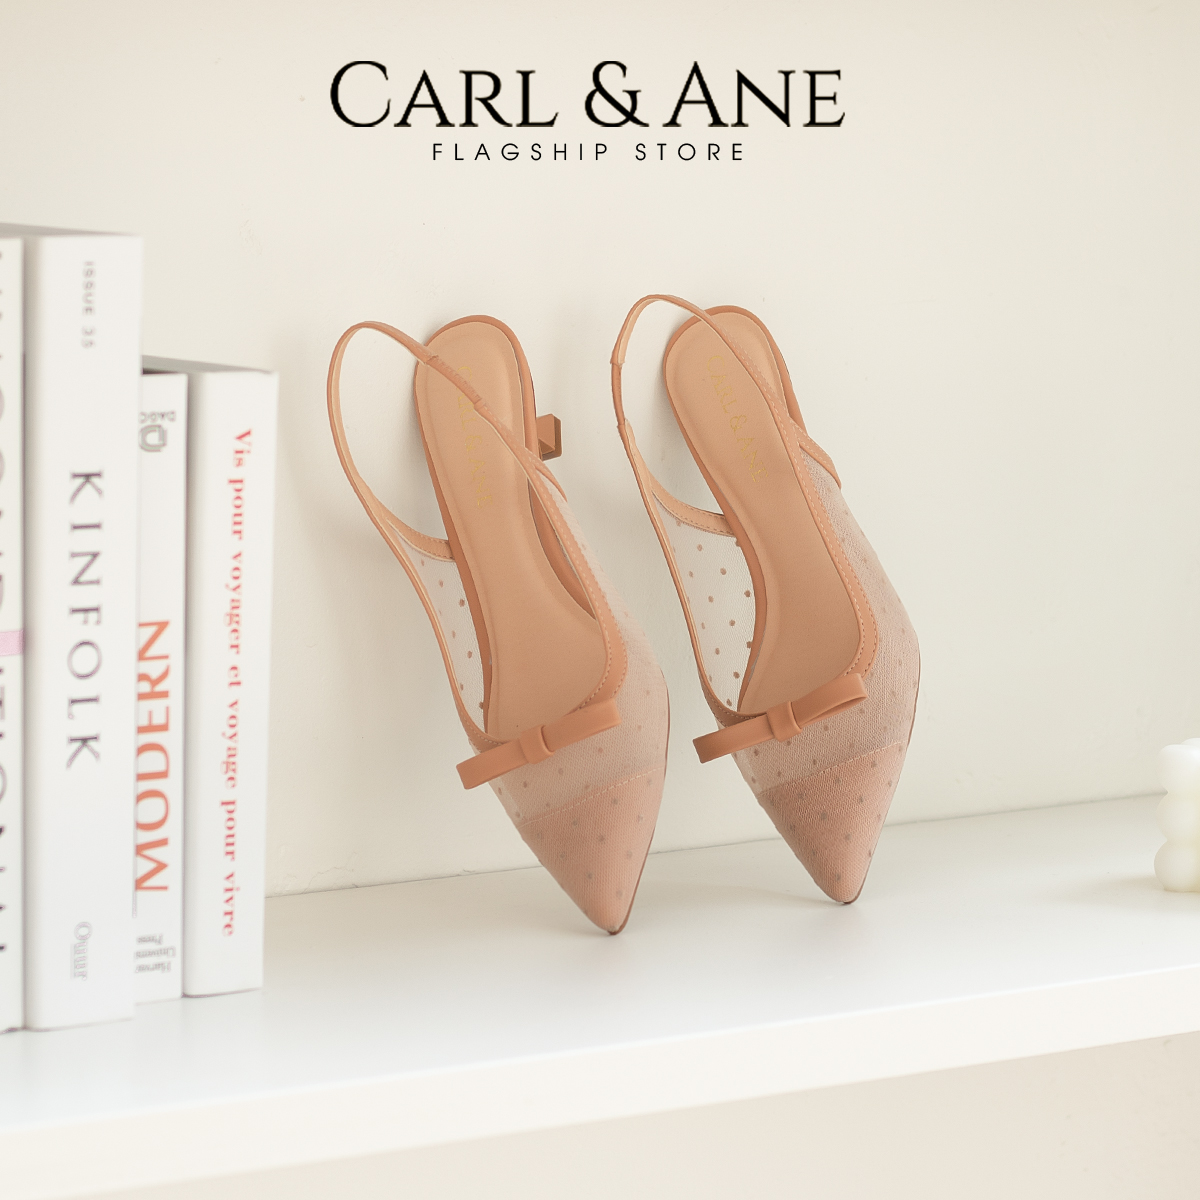 Carl & Ane - Giày cao gót mũi nhọn phối dây lưới thời trang công sở cao 5cm màu nude - CL030